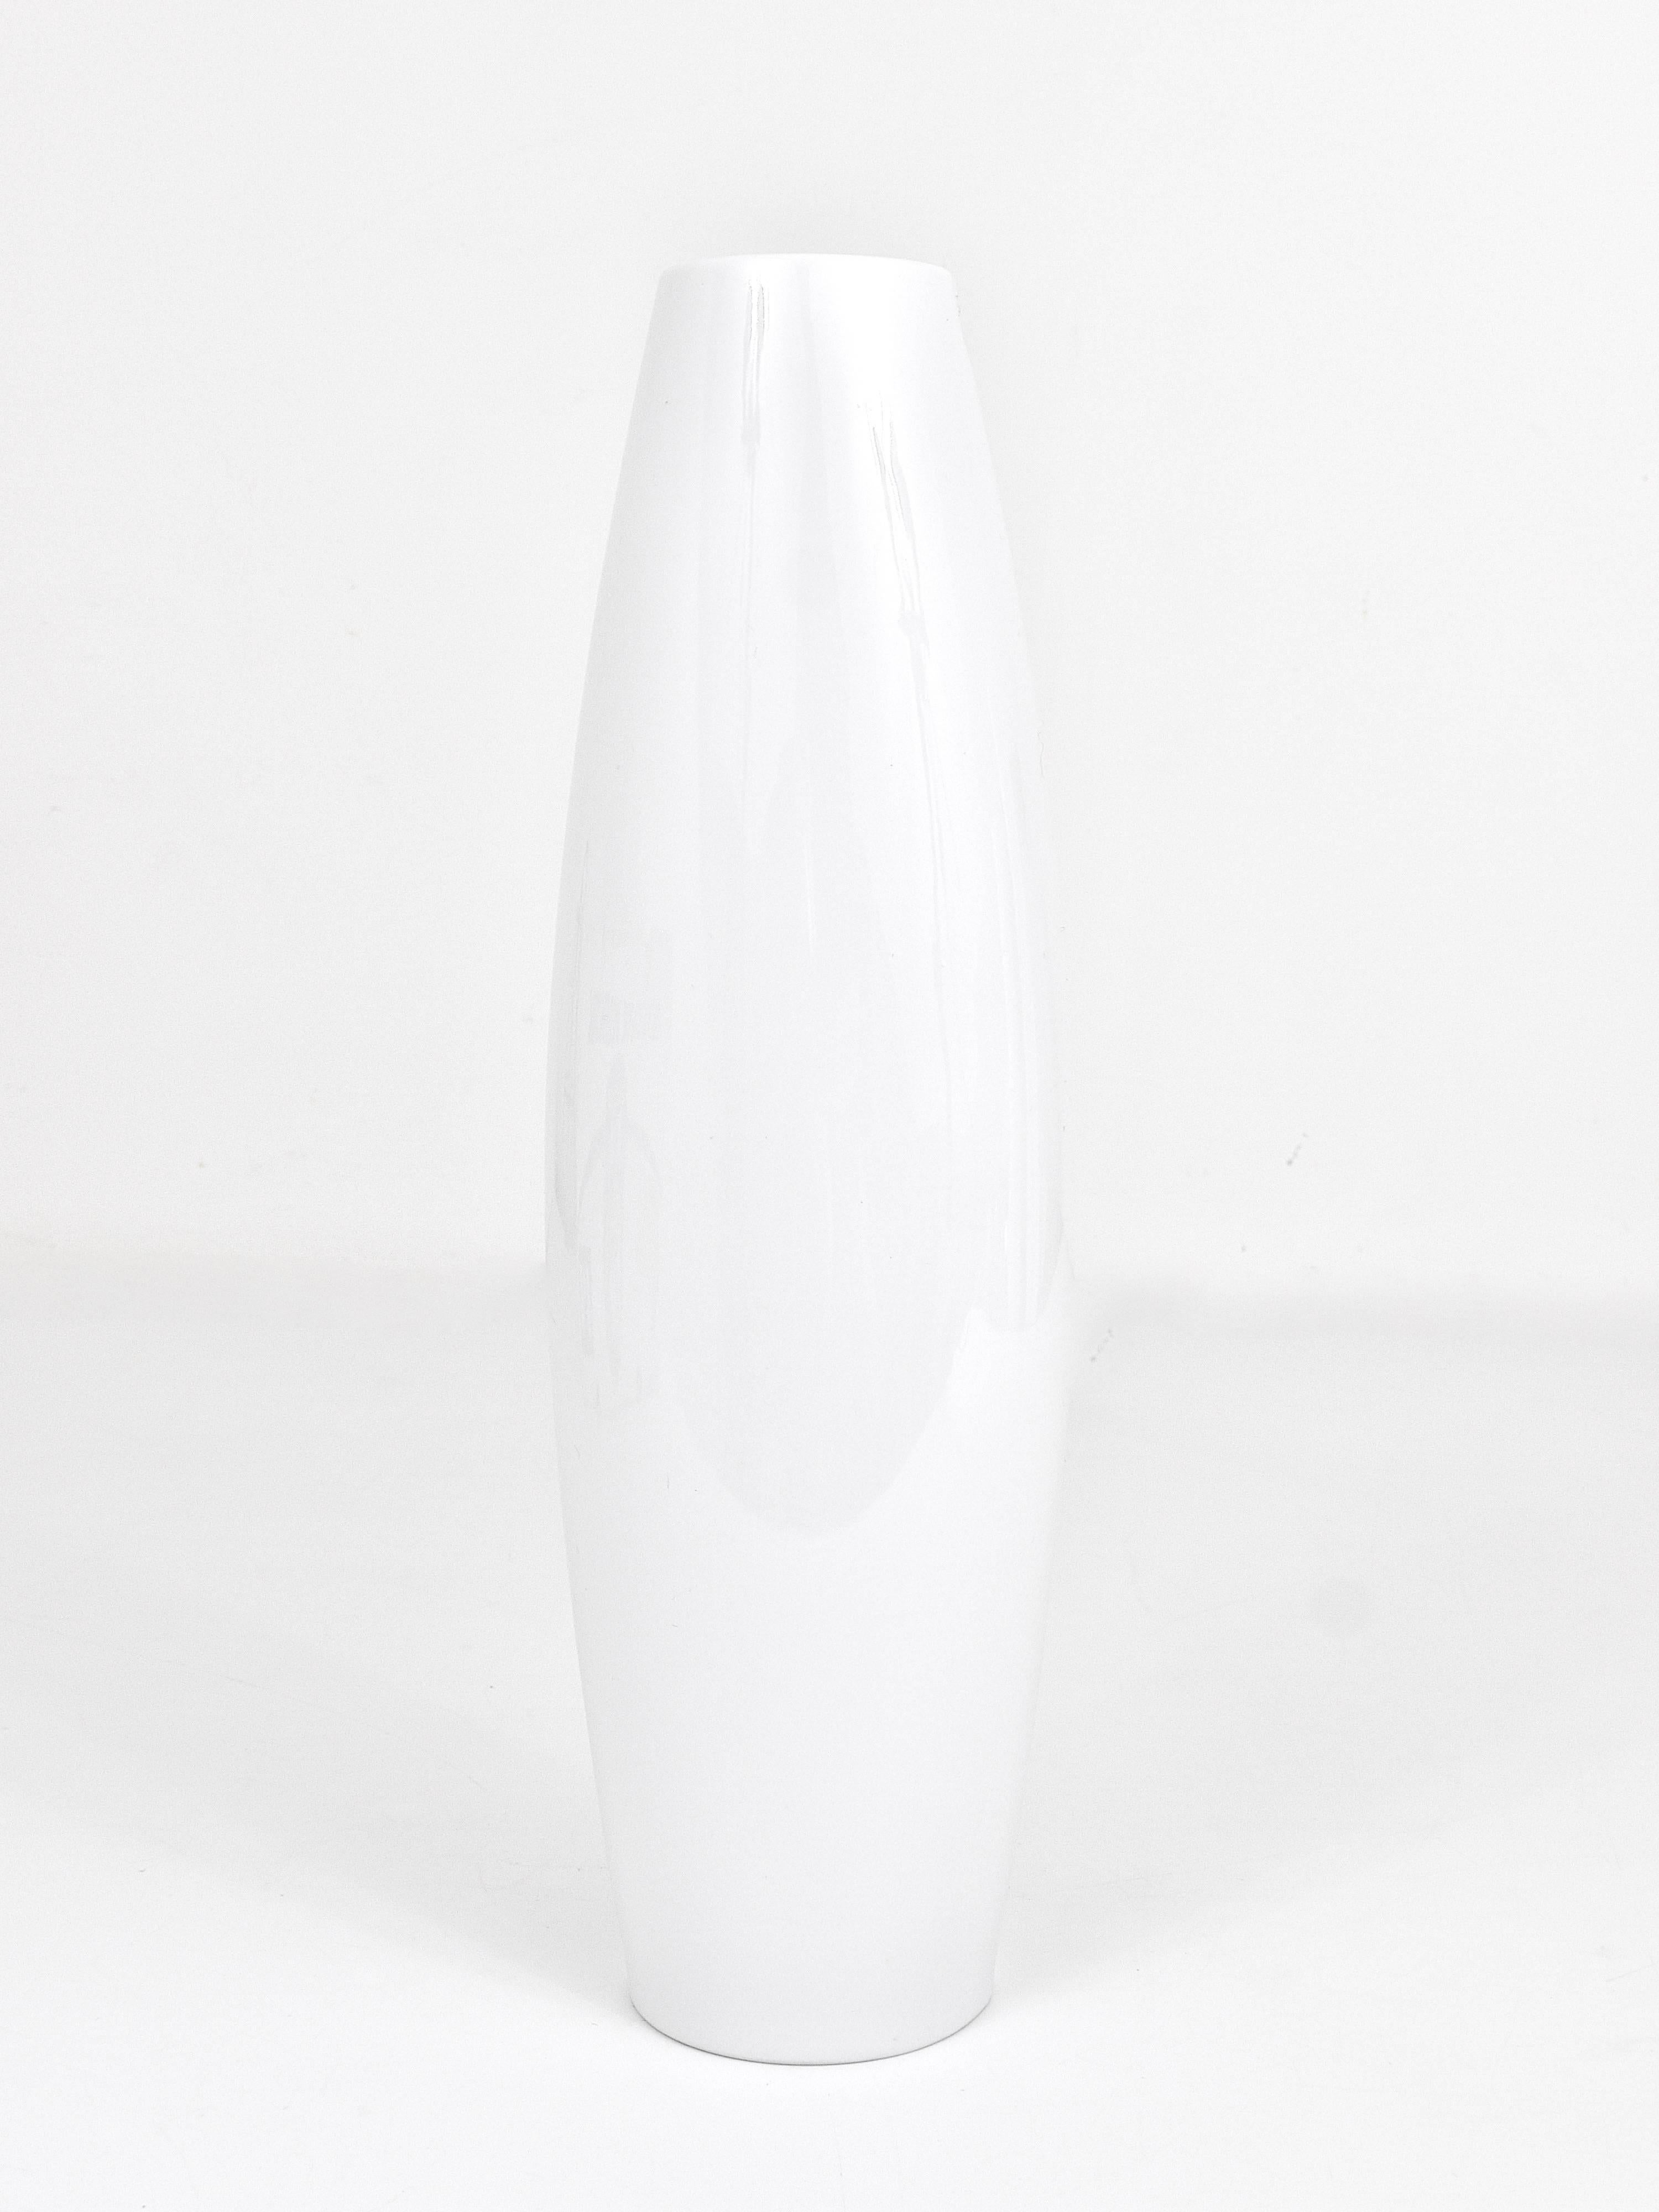 Cuno Fischer Rosenthal Studio-Linie Vaso in porcellana Op Art a rilievo bianco, anni '60 in vendita 1